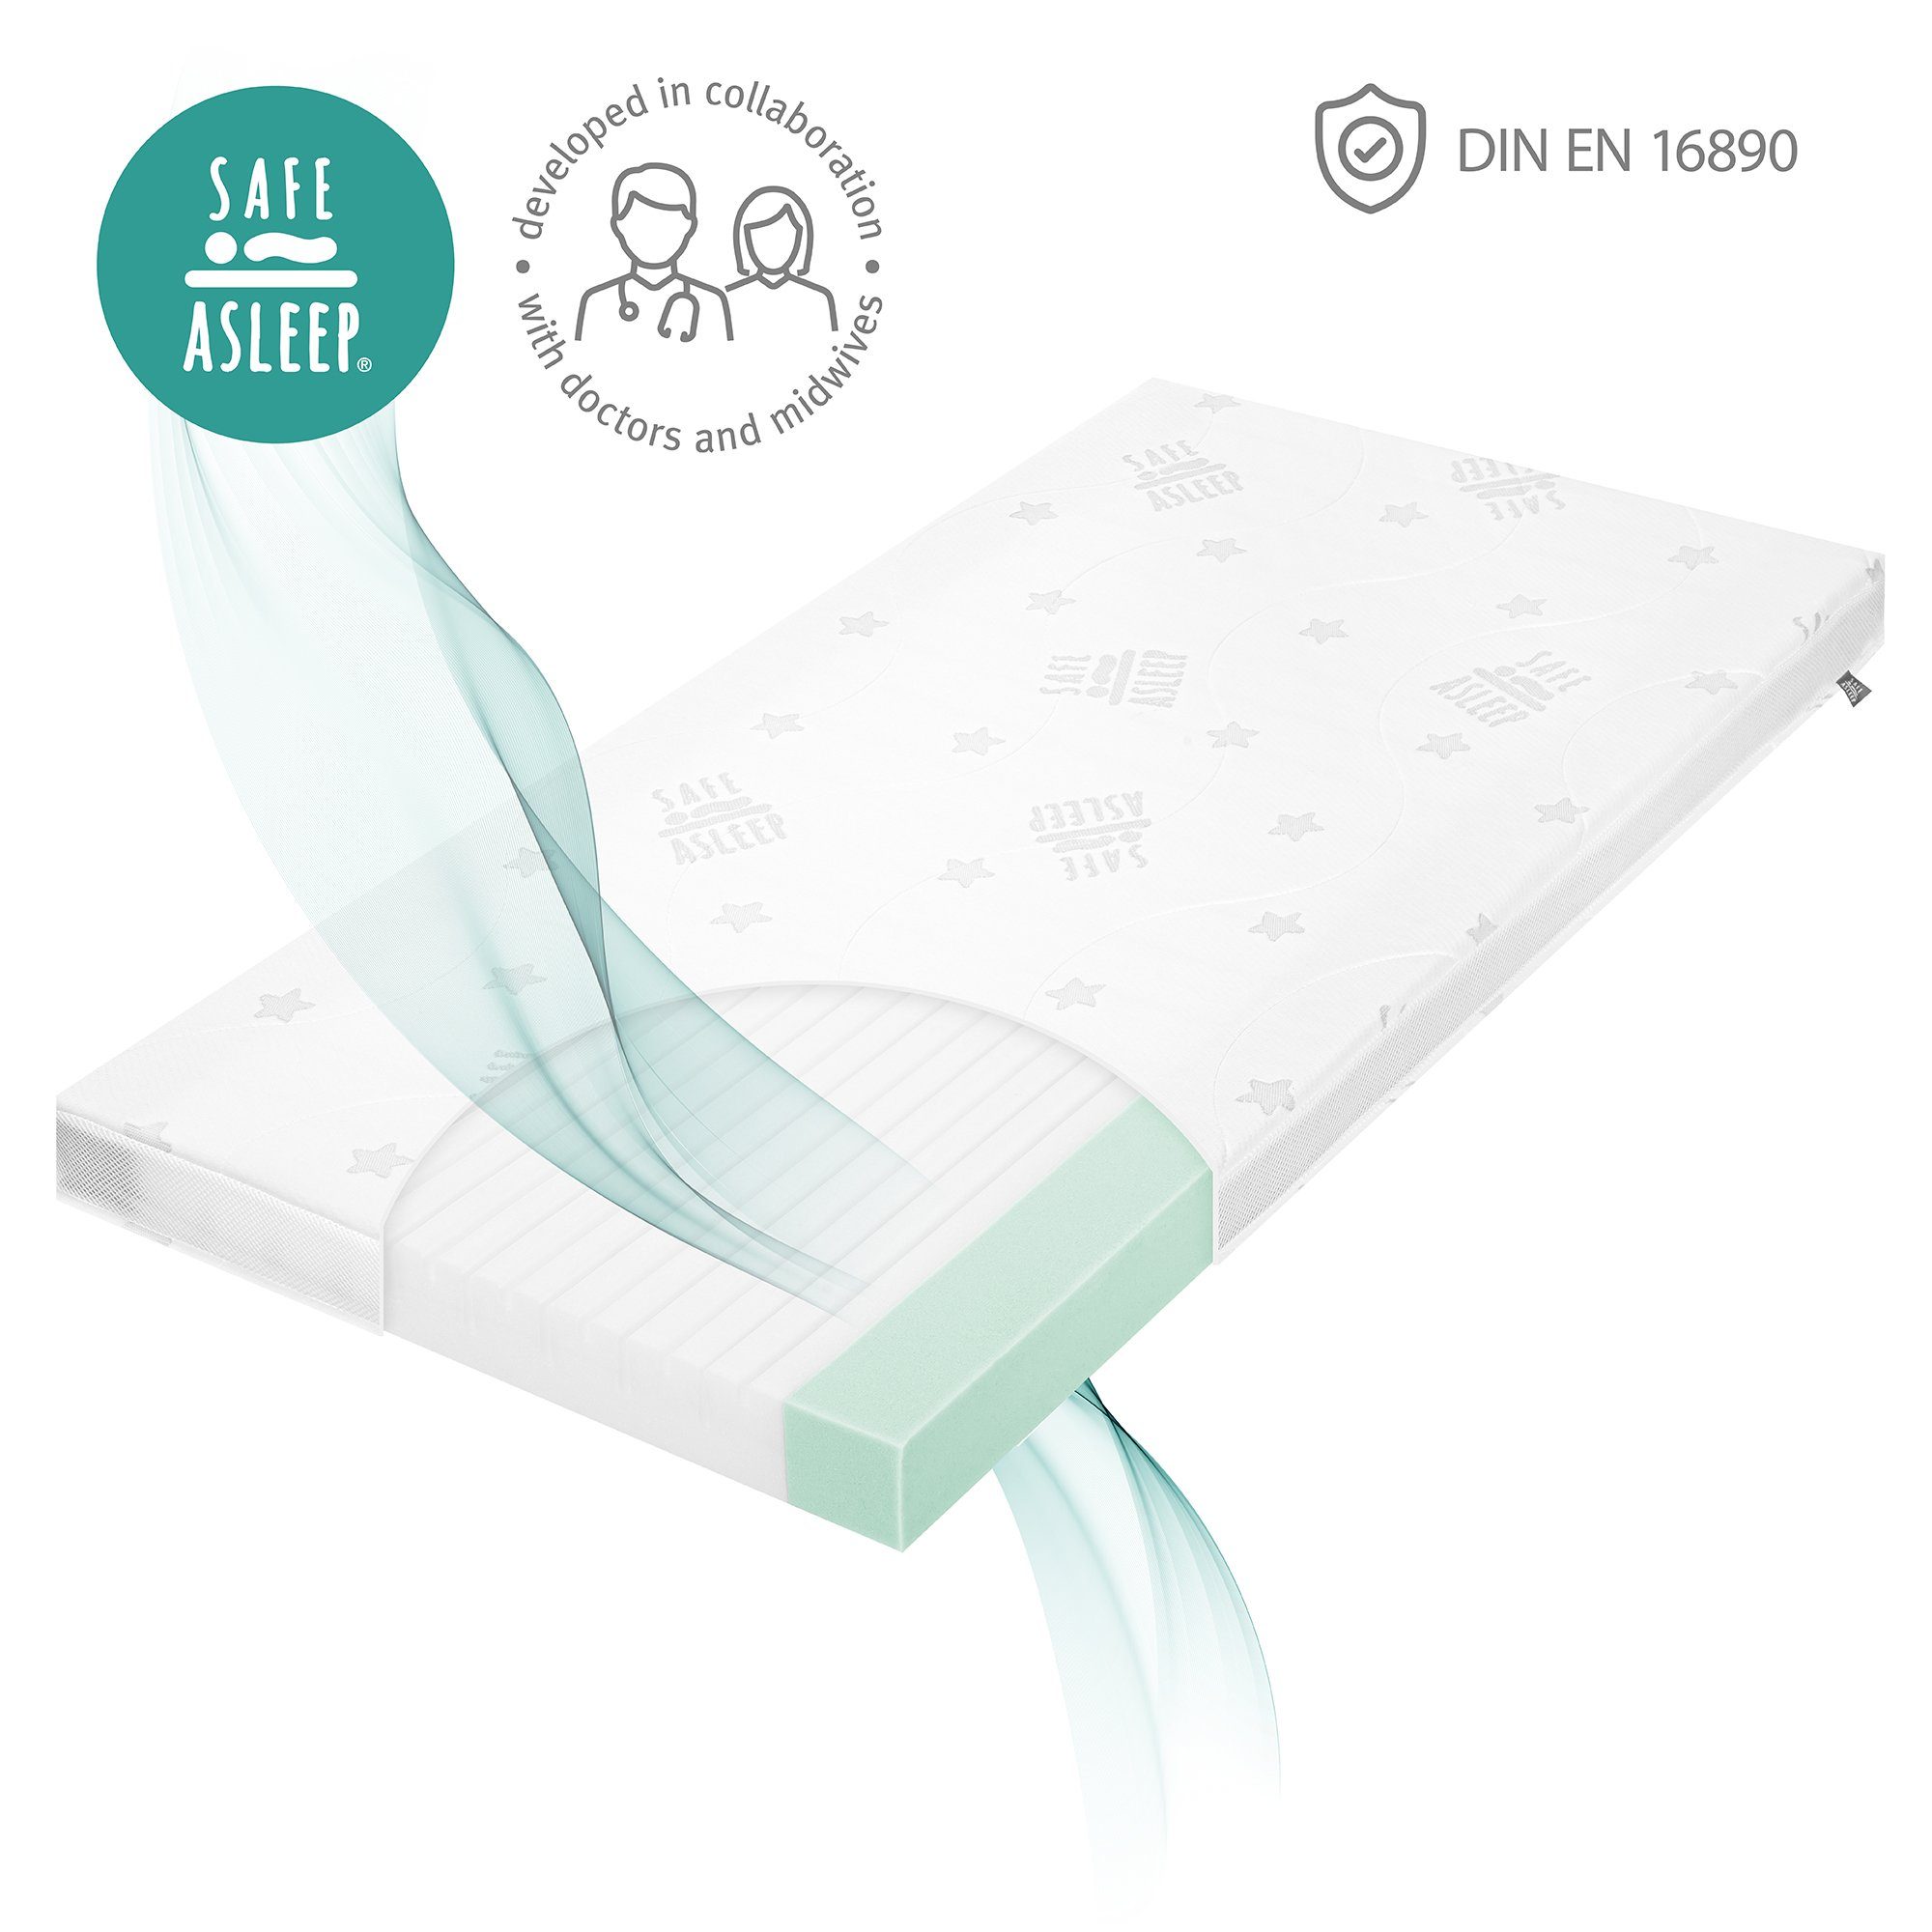 Babymatratze safe asleep® - Air Balance, roba®, 9 cm hoch, Babybettmatratze, für optimales Schlafklima